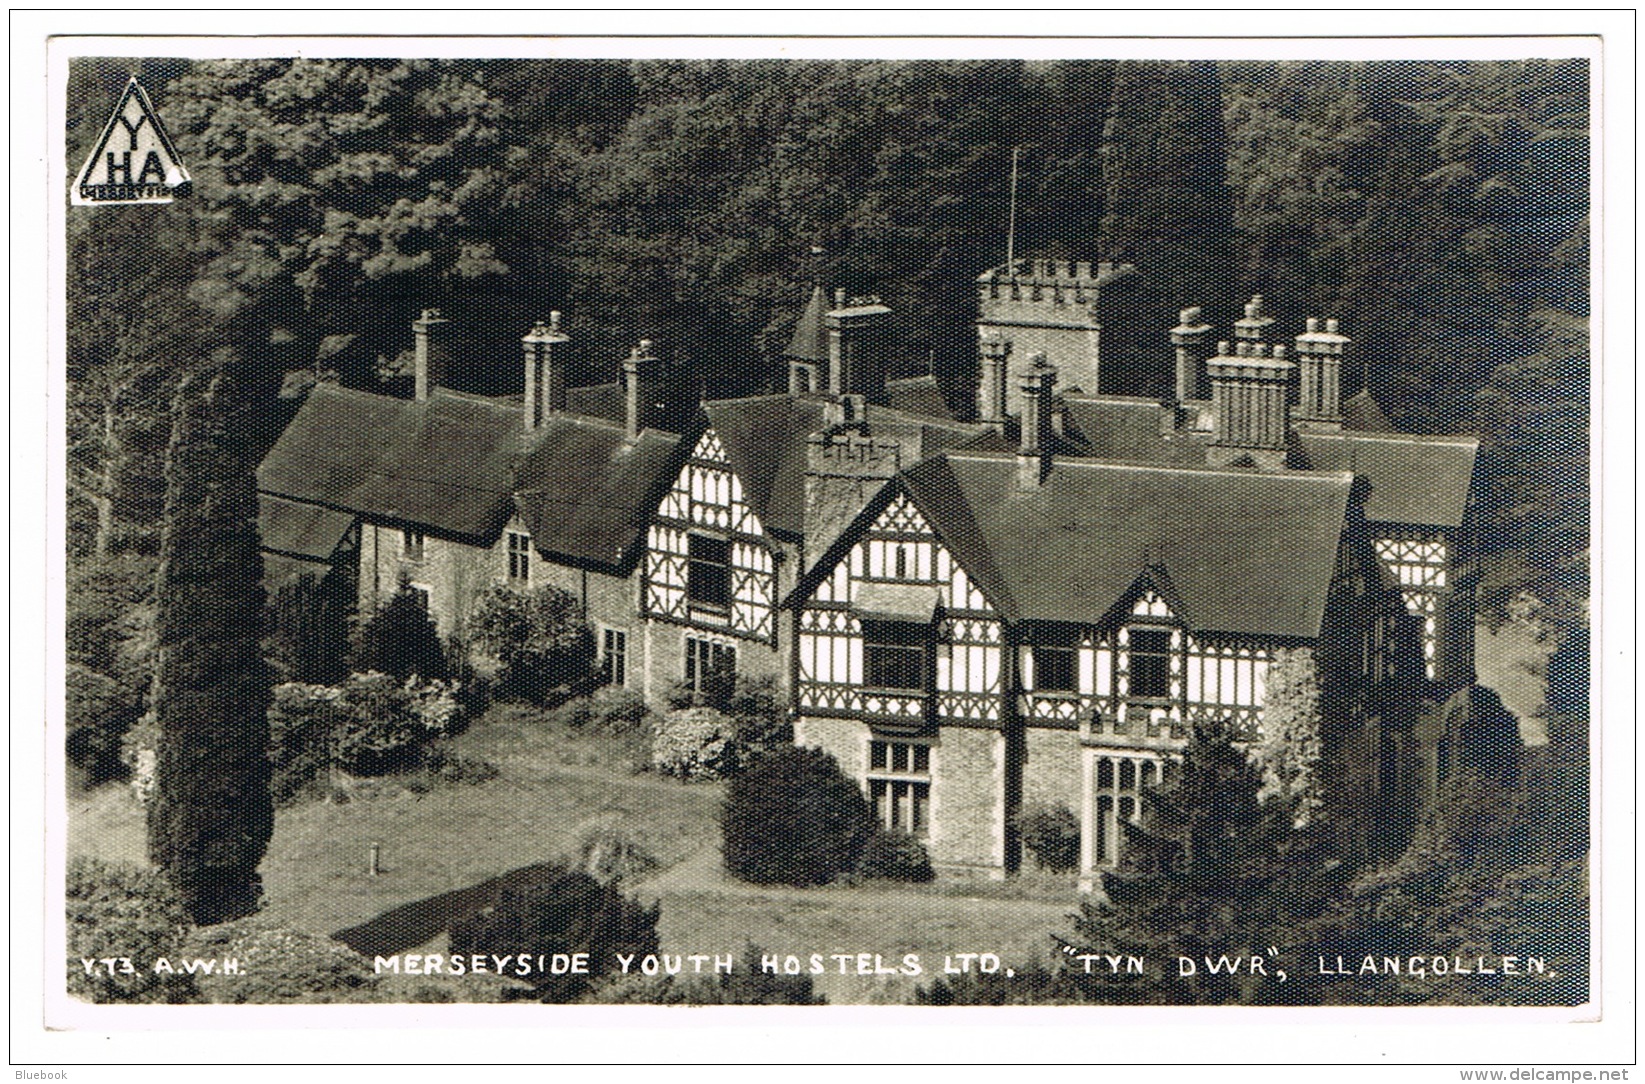 RB 1089 - 1954 Photo Postcard - Mesreyside Youth Hostel "Tyn Dwr" Llangollen Wales - Denbighshire